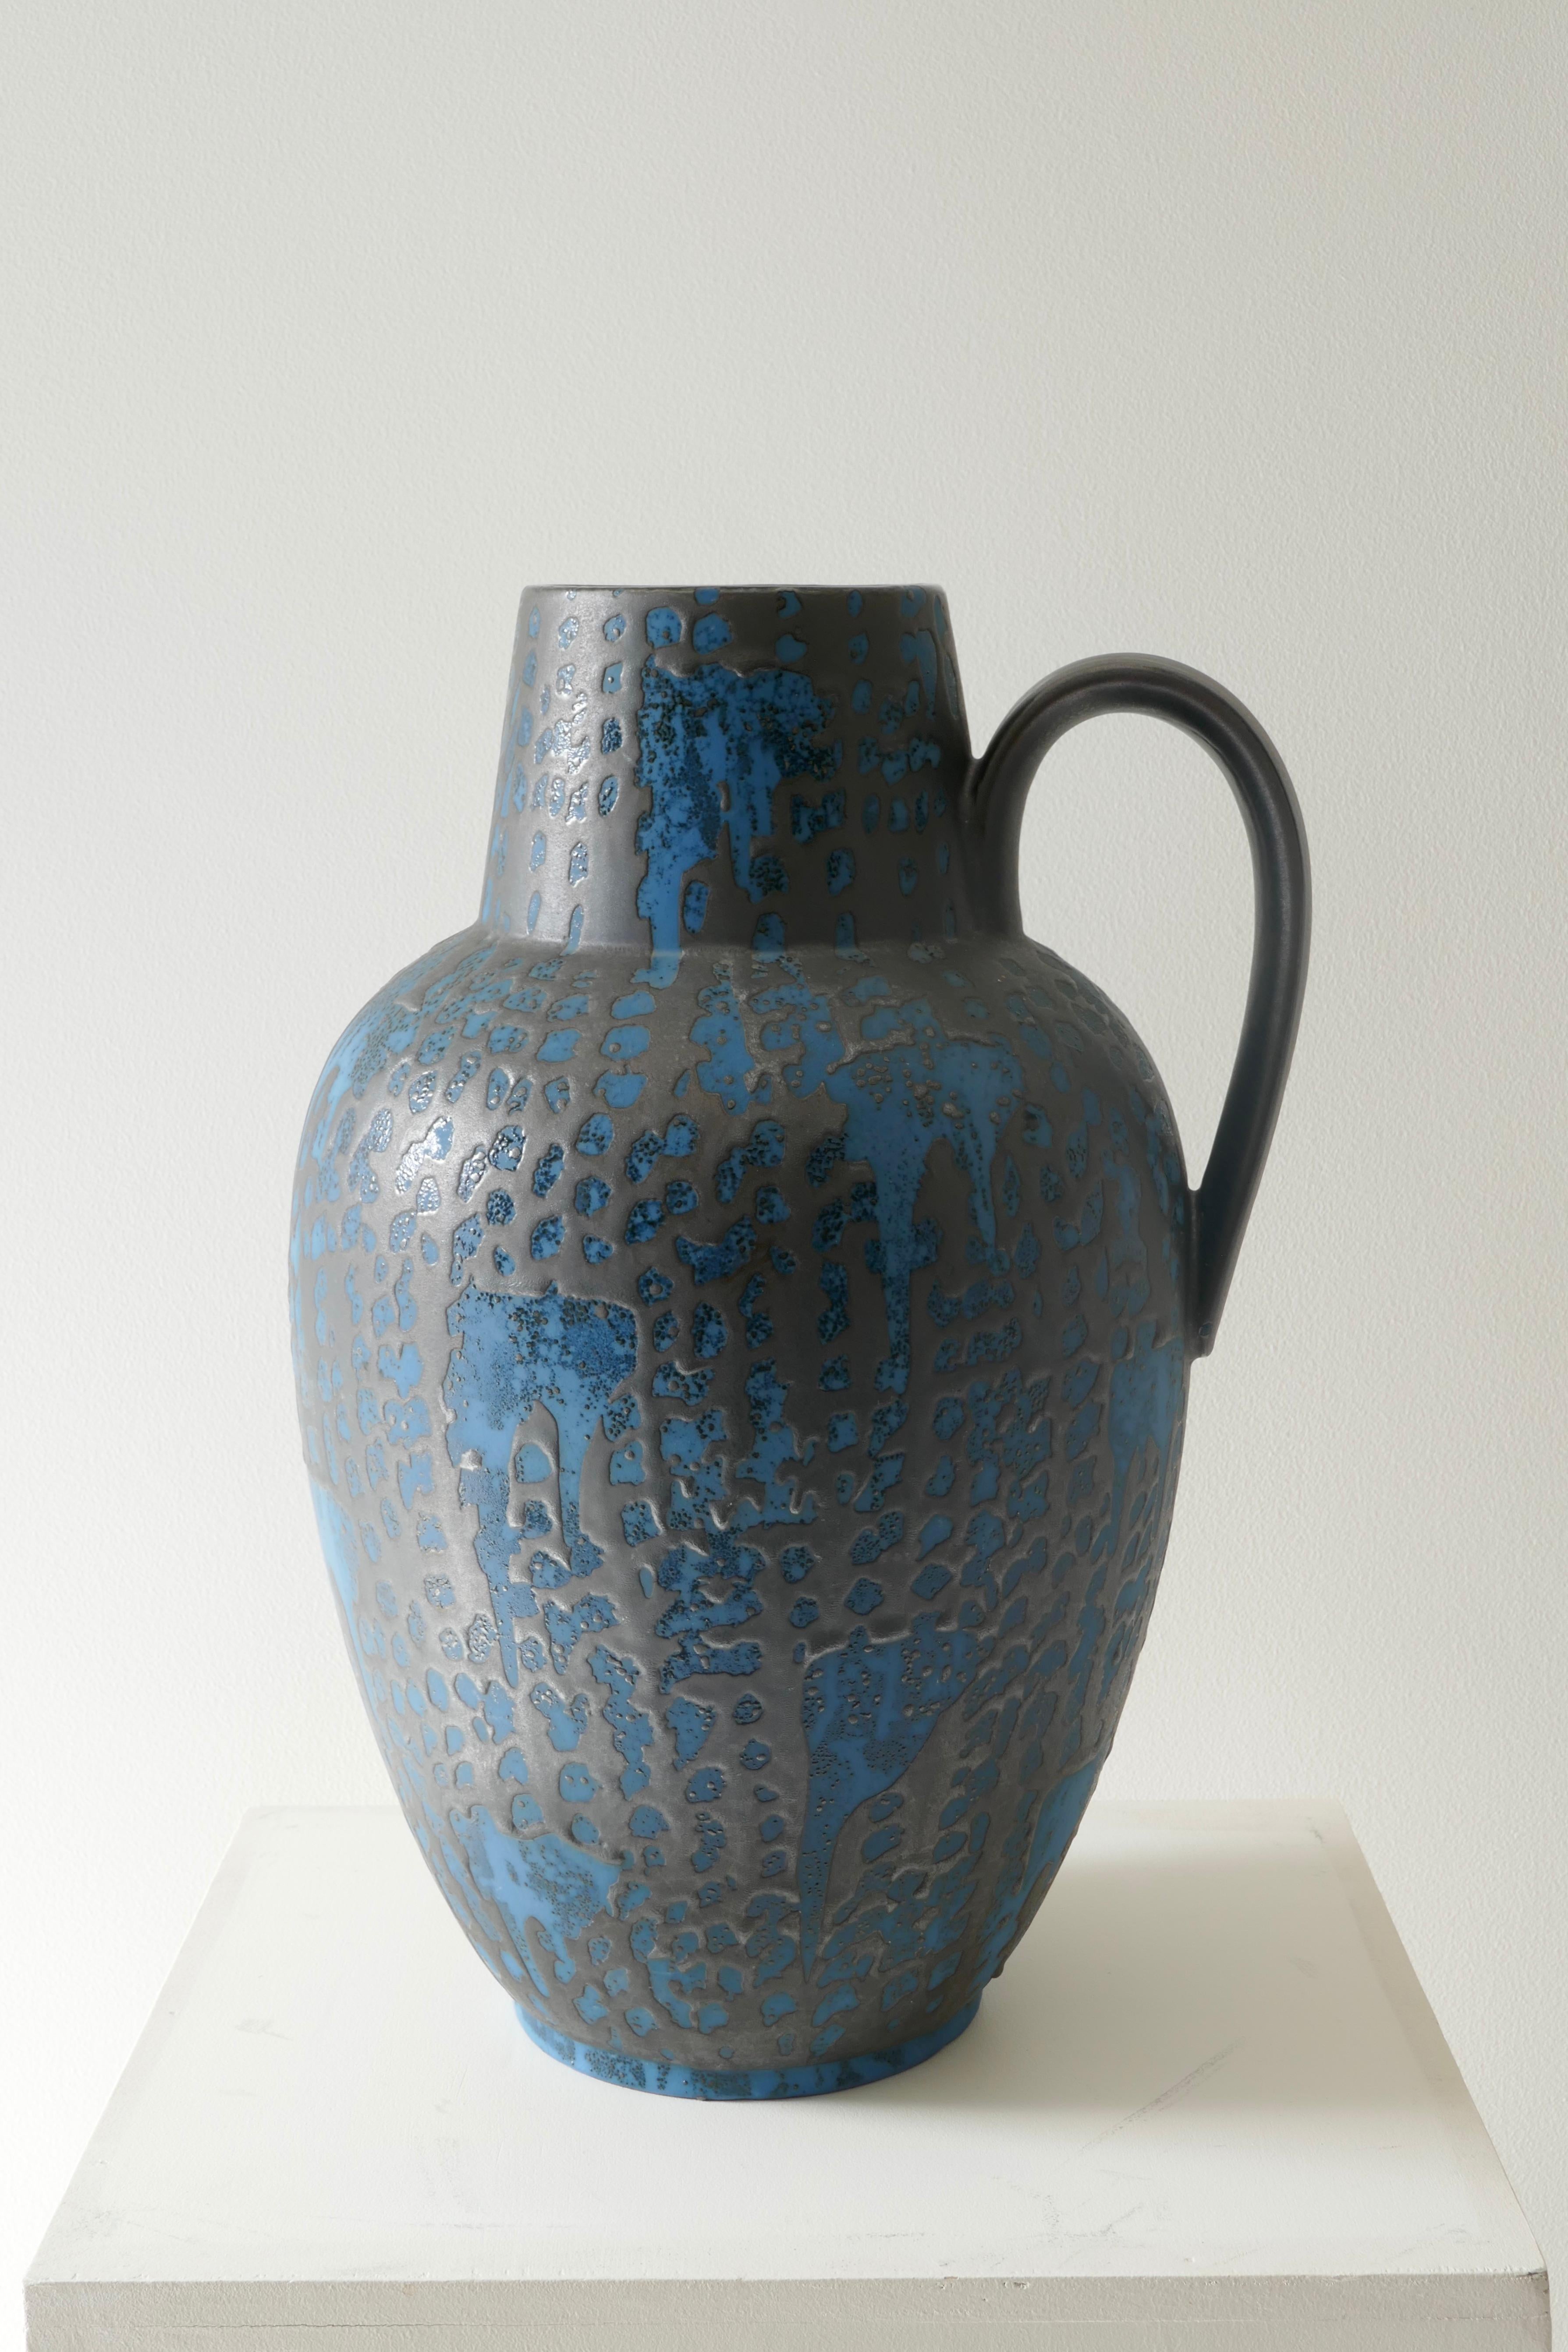 Eine atemberaubende Vase, die Carstens zugeschrieben wird und in den 1970er Jahren in Westdeutschland hergestellt wurde.
Die Carstens Tonnieshof-Fabrik befand sich in Freden an der Leine (Westdeutschland), nachdem sie die meisten ihrer Fabriken an